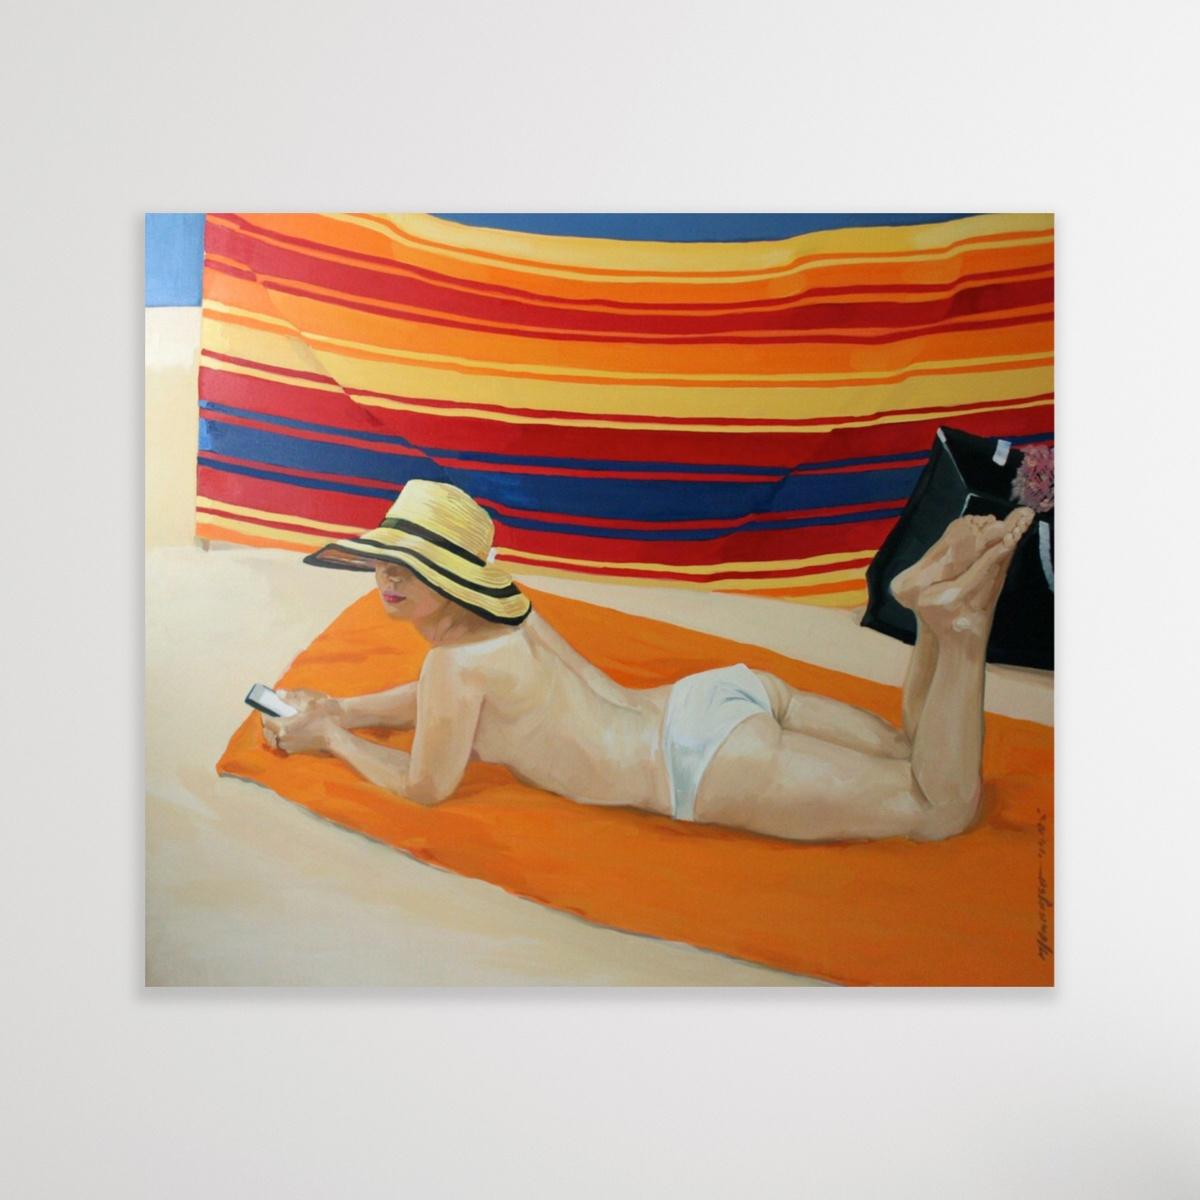 A Beach Screem - Peinture à l'huile sur toile contemporaine, peinture réaliste figurative - Contemporain Painting par Marek Okrassa